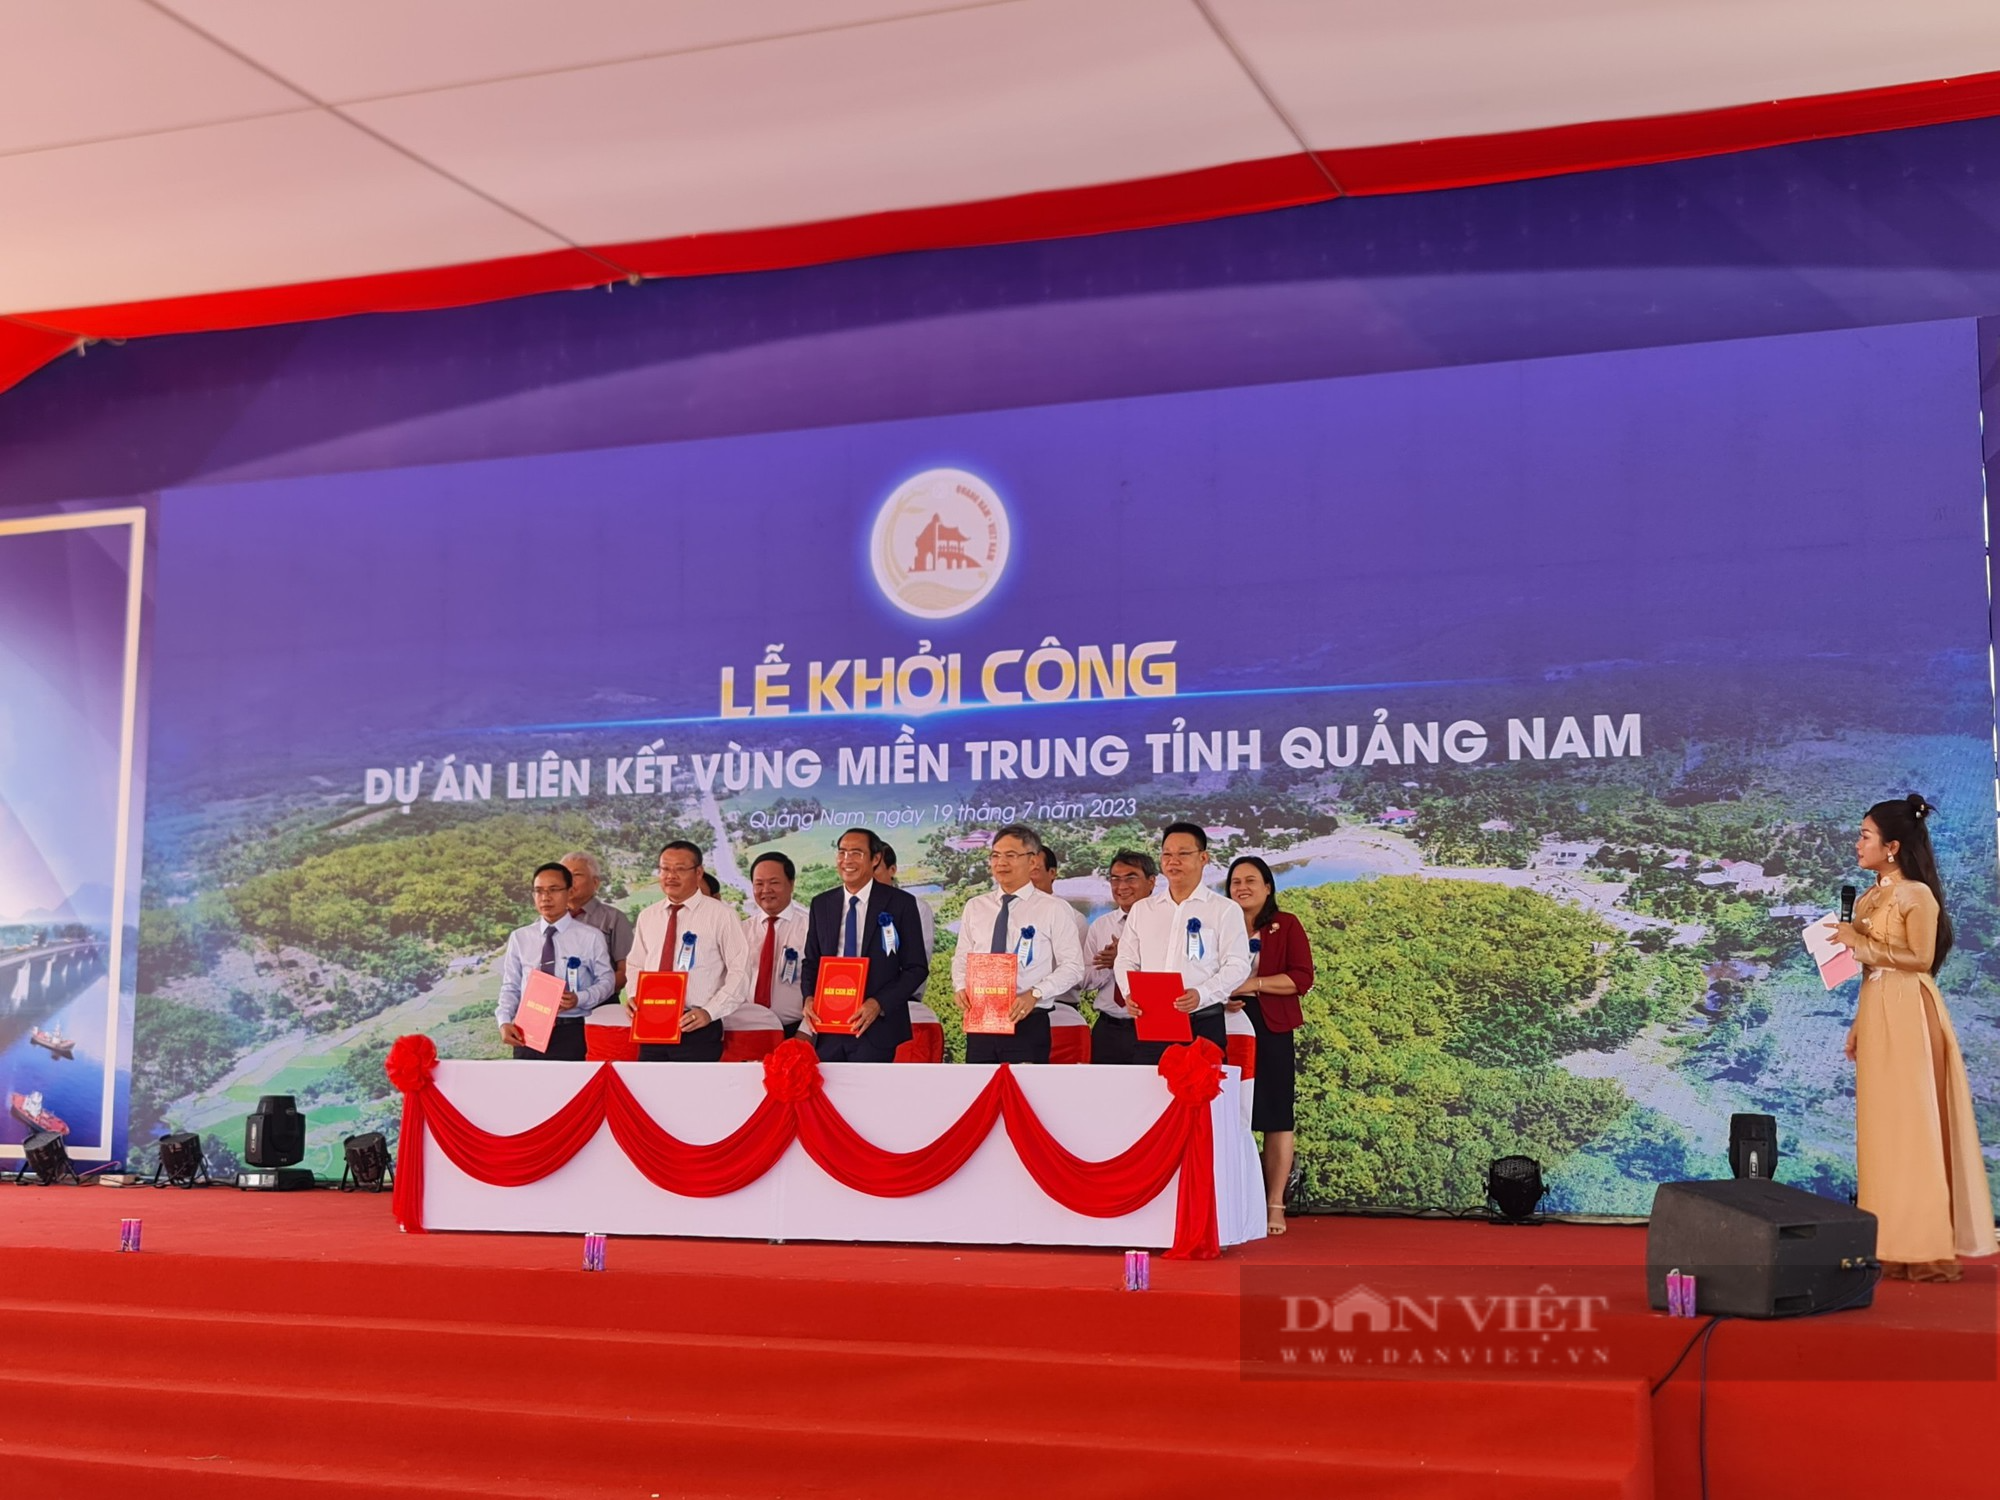 Dự án liên kết vùng miền Trung tỉnh Quảng Nam đầu tư 768 tỷ đồng: Tạo kết nối giao thông, phát triển giao thương - Ảnh 2.